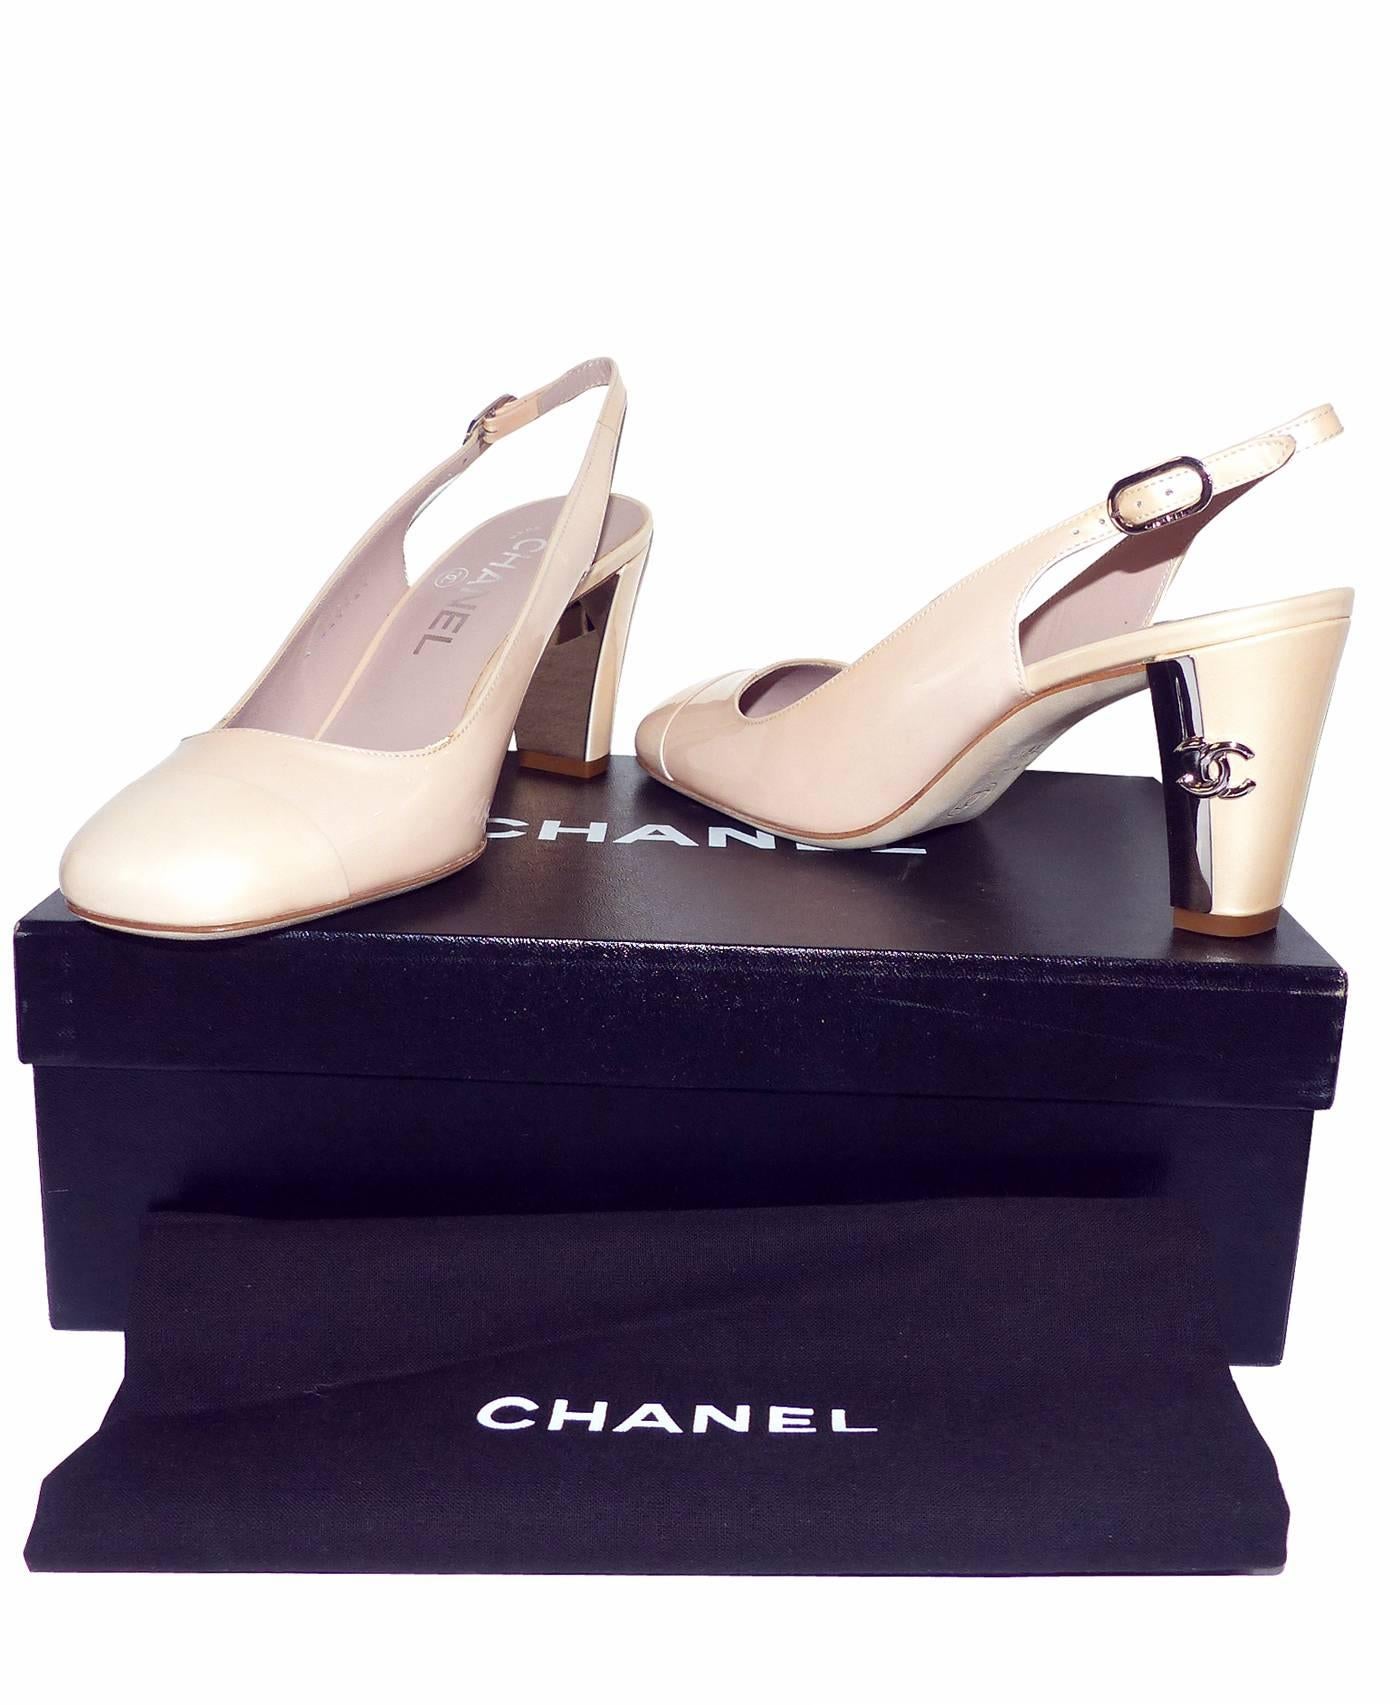 Chanel Classique Pumps Rose Leather 36.5 Europe Size  / EXCELLENTE CONDITION  1